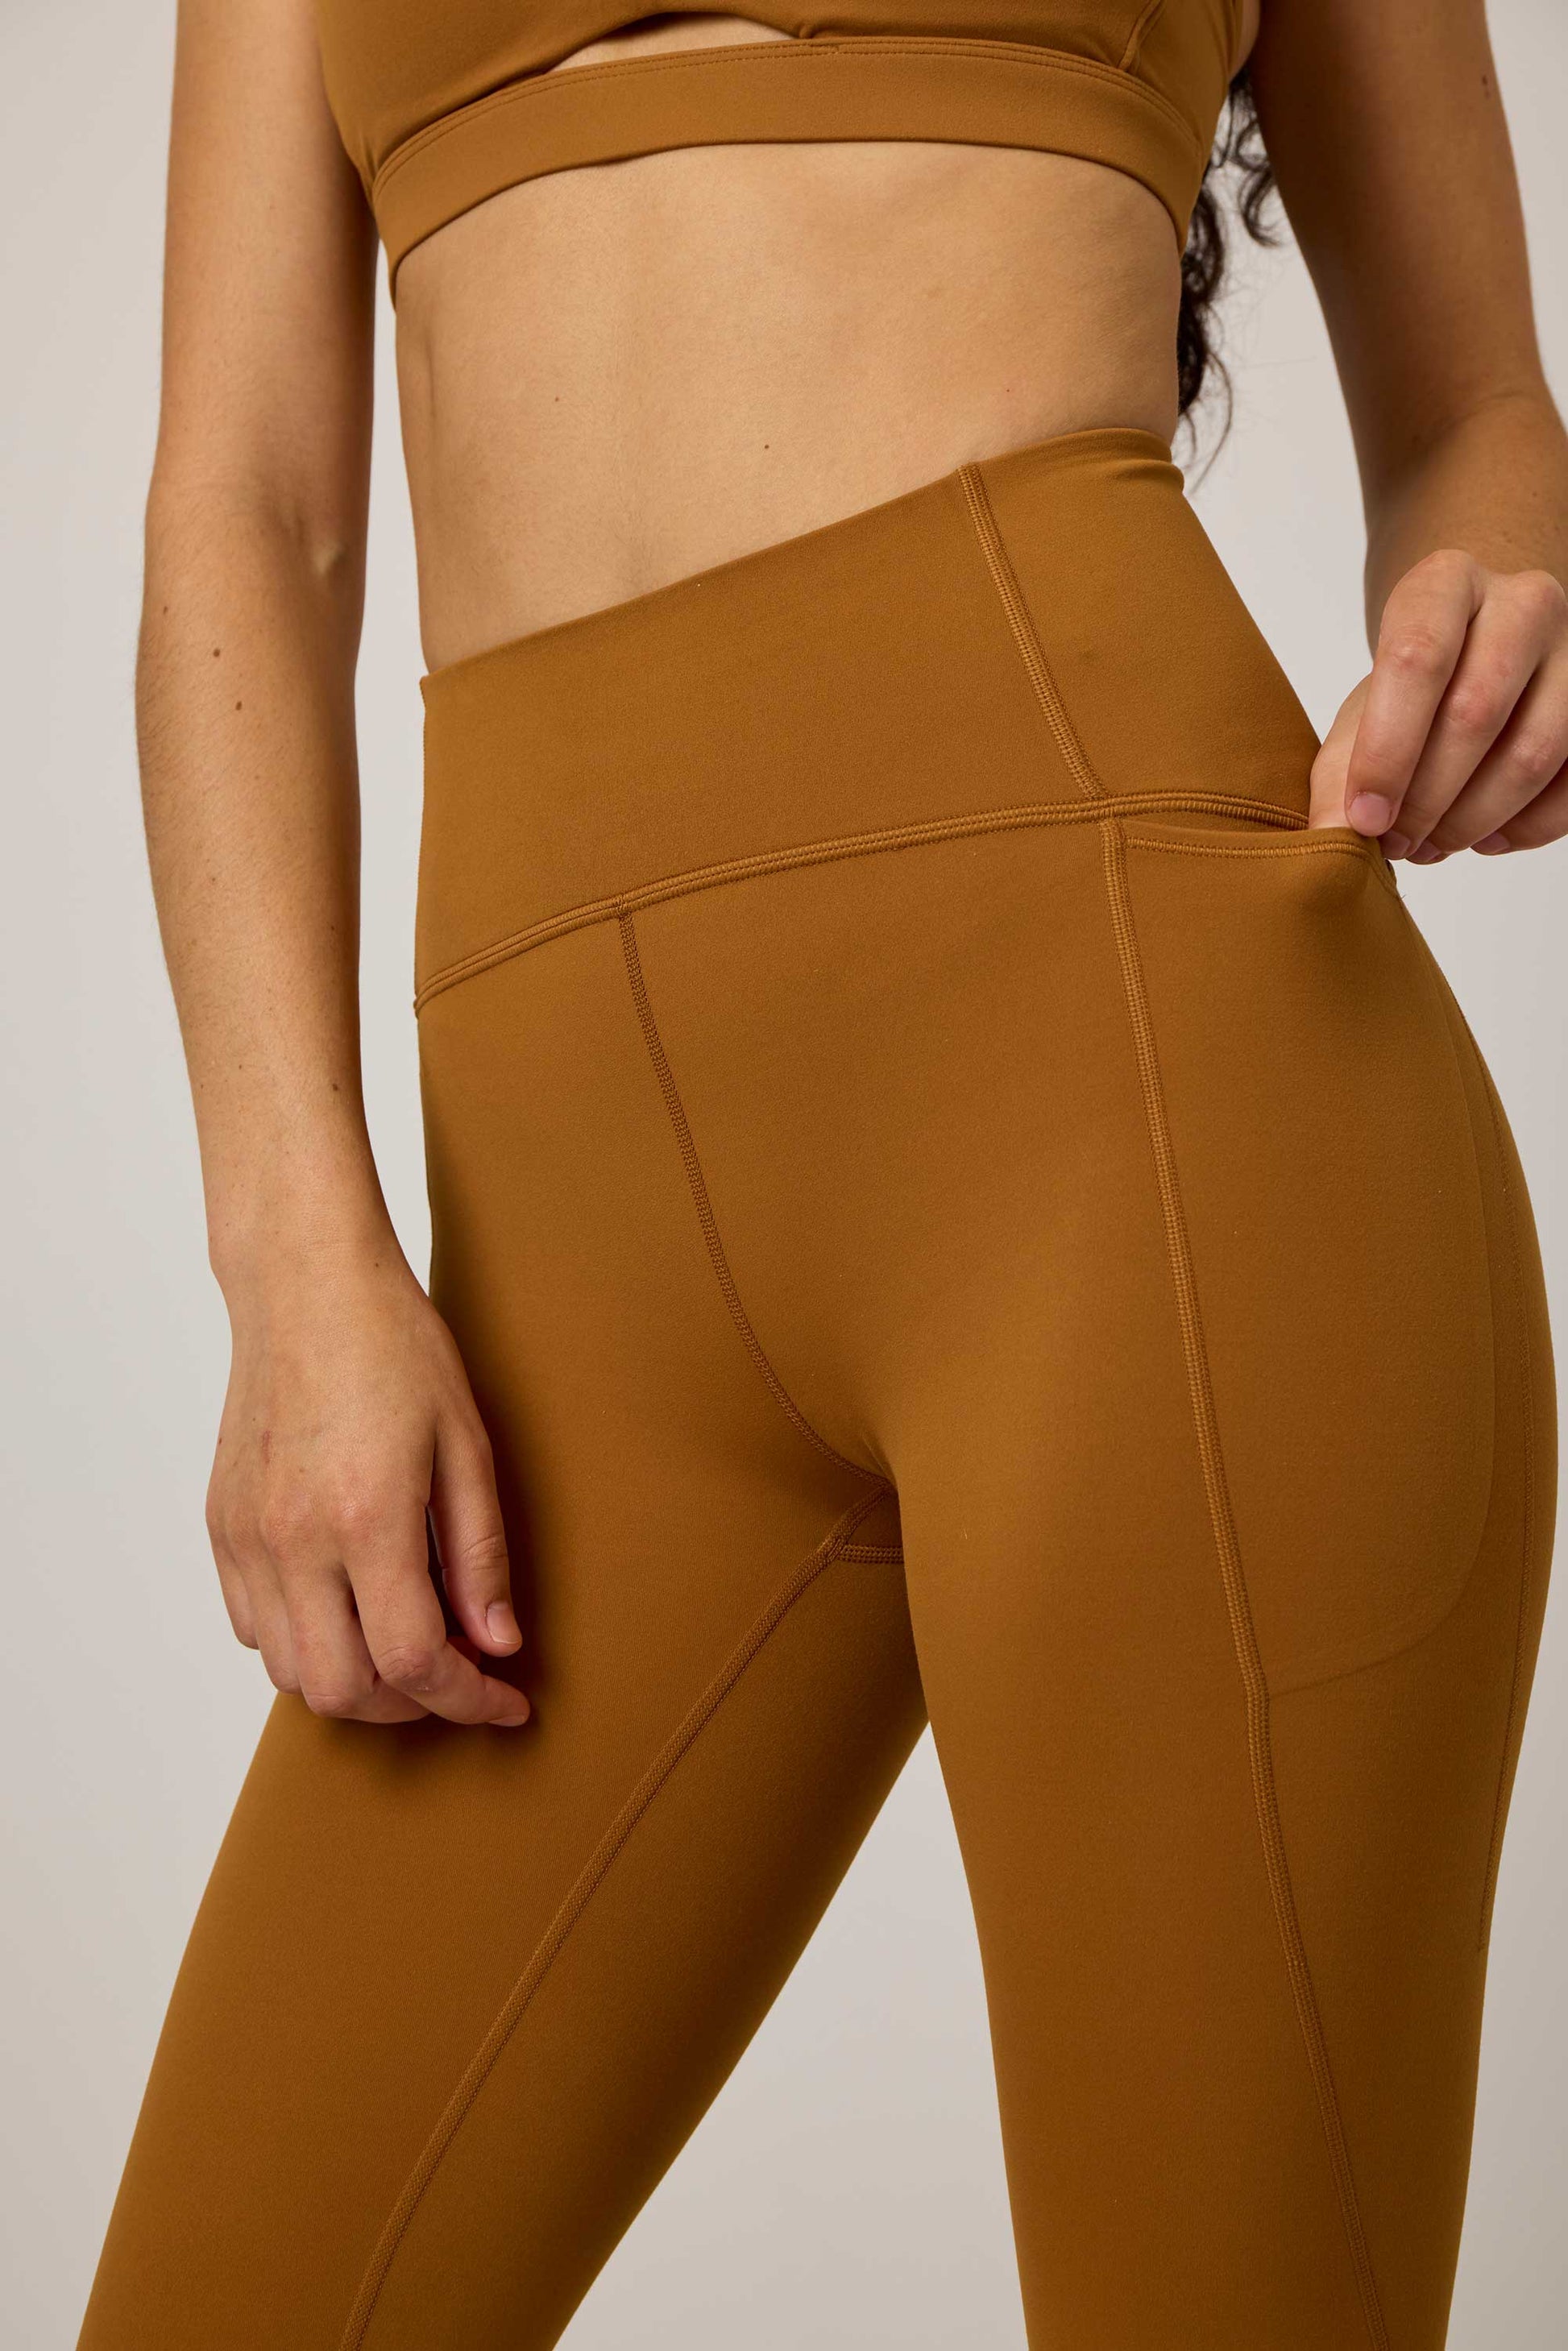 lululemon “spiced bronze” align leggings !!